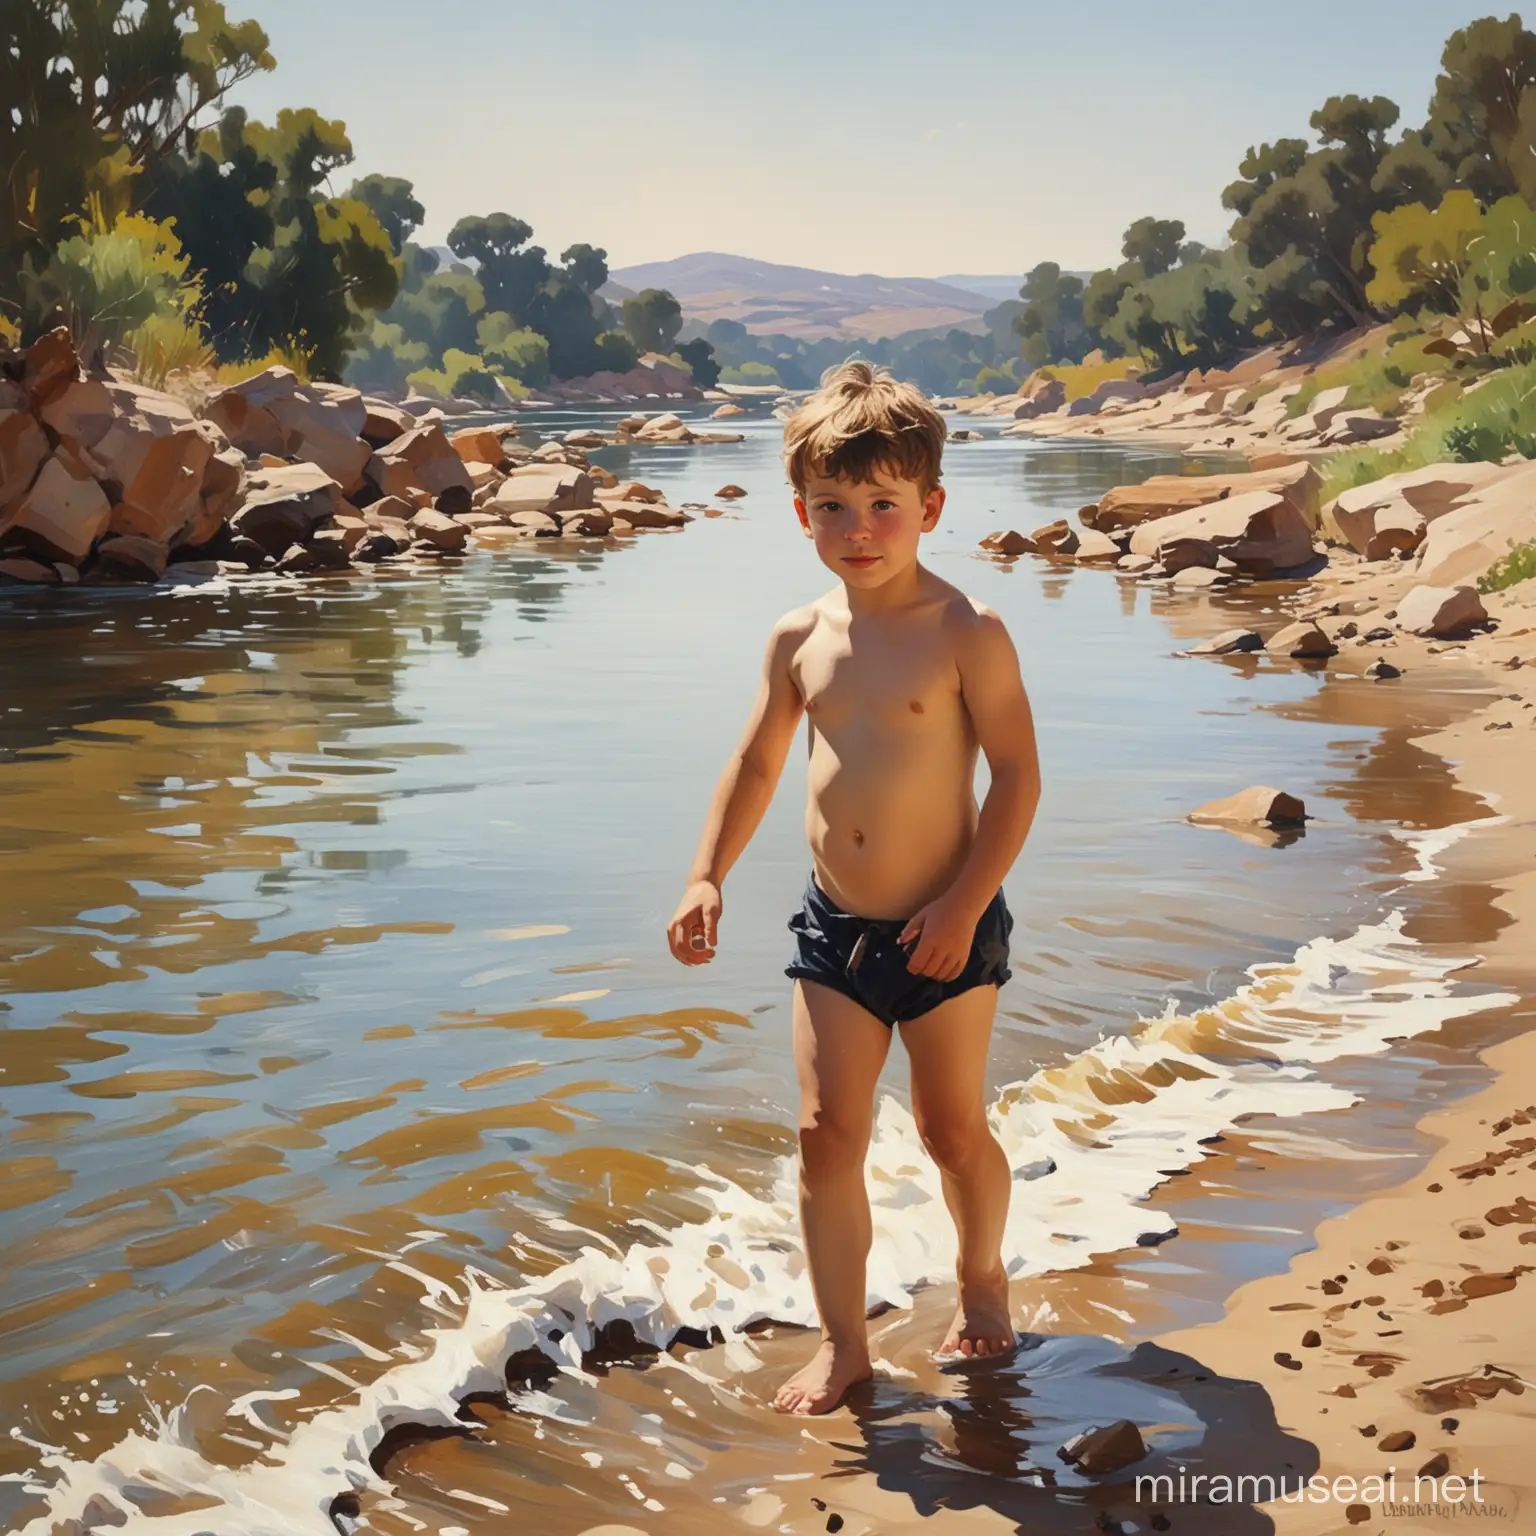 картина в стиле Хоакин Соролья , на берегу.мальчик на фоне реки купается. жеребенок,контрожур.рядом жиребенок 